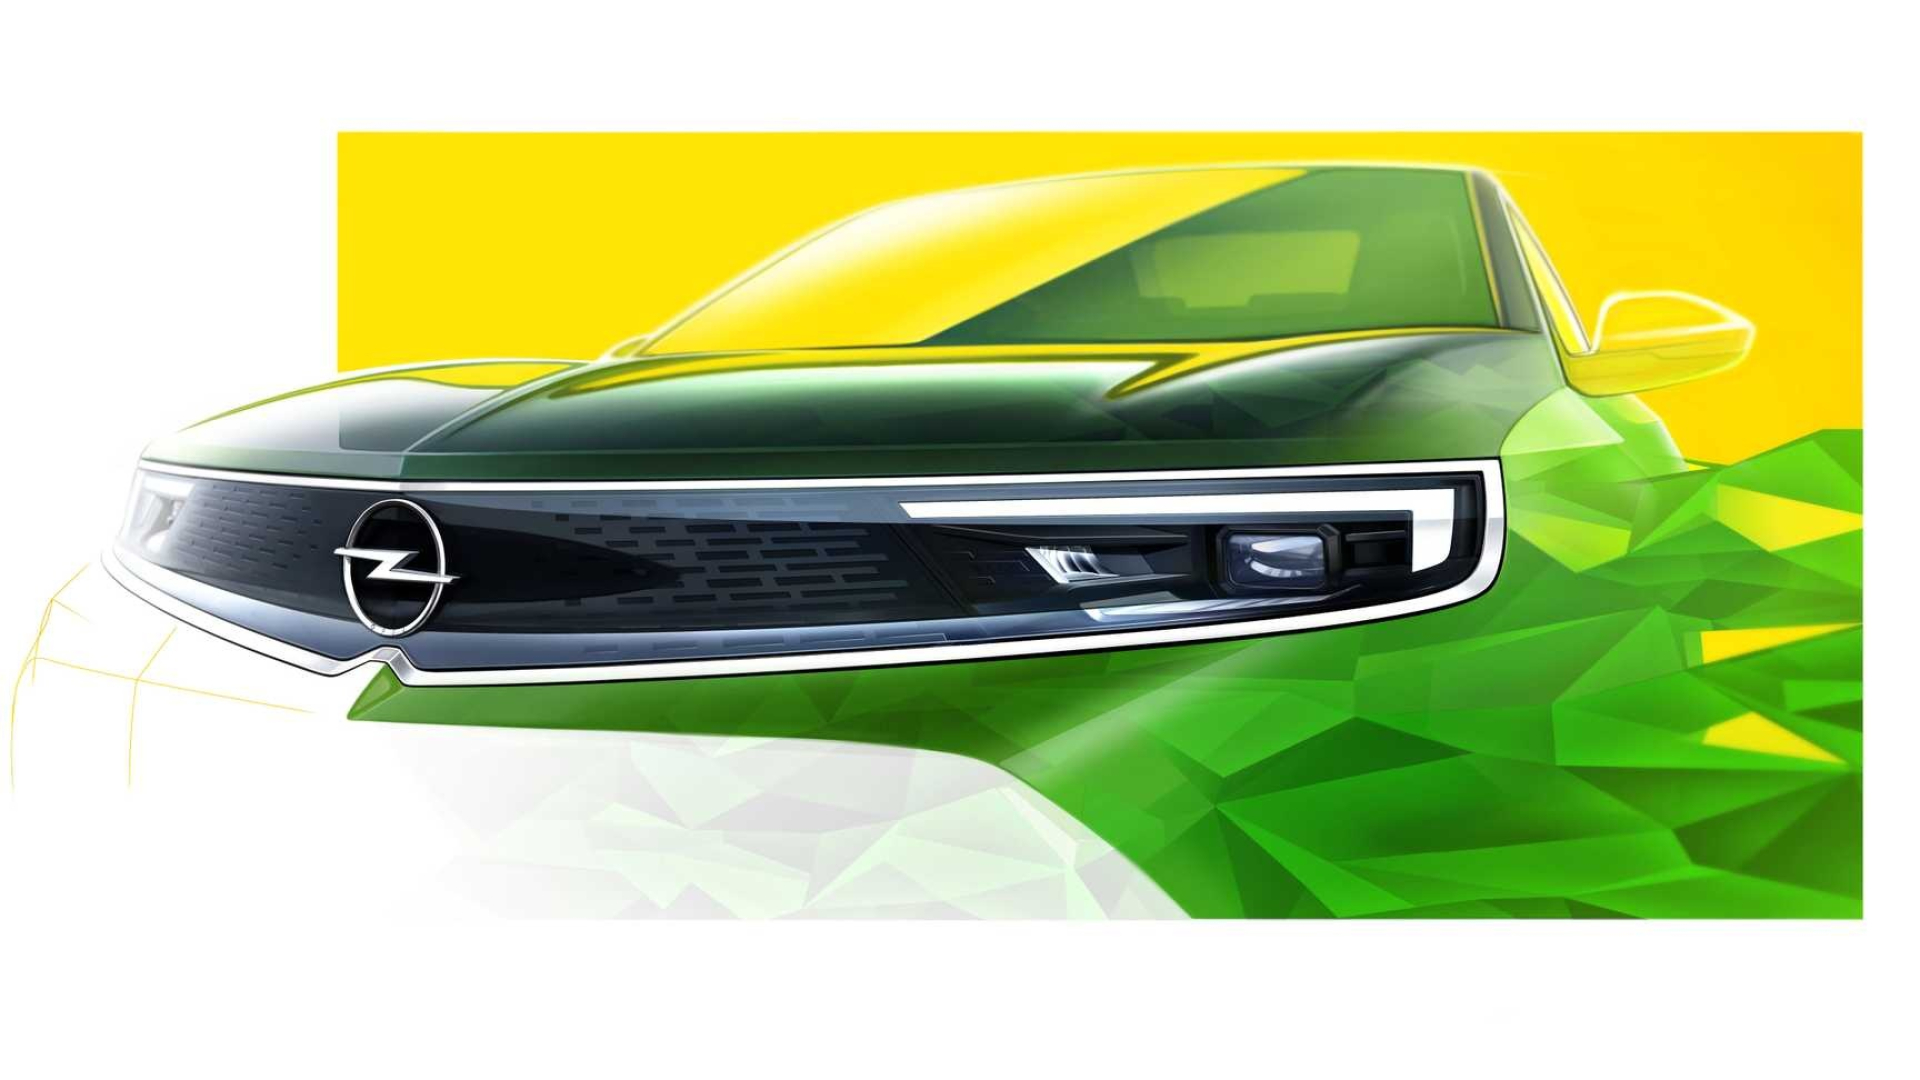 Opel Mokka, 2020 model, Front design, Car update, 1920x1080 Full HD Desktop